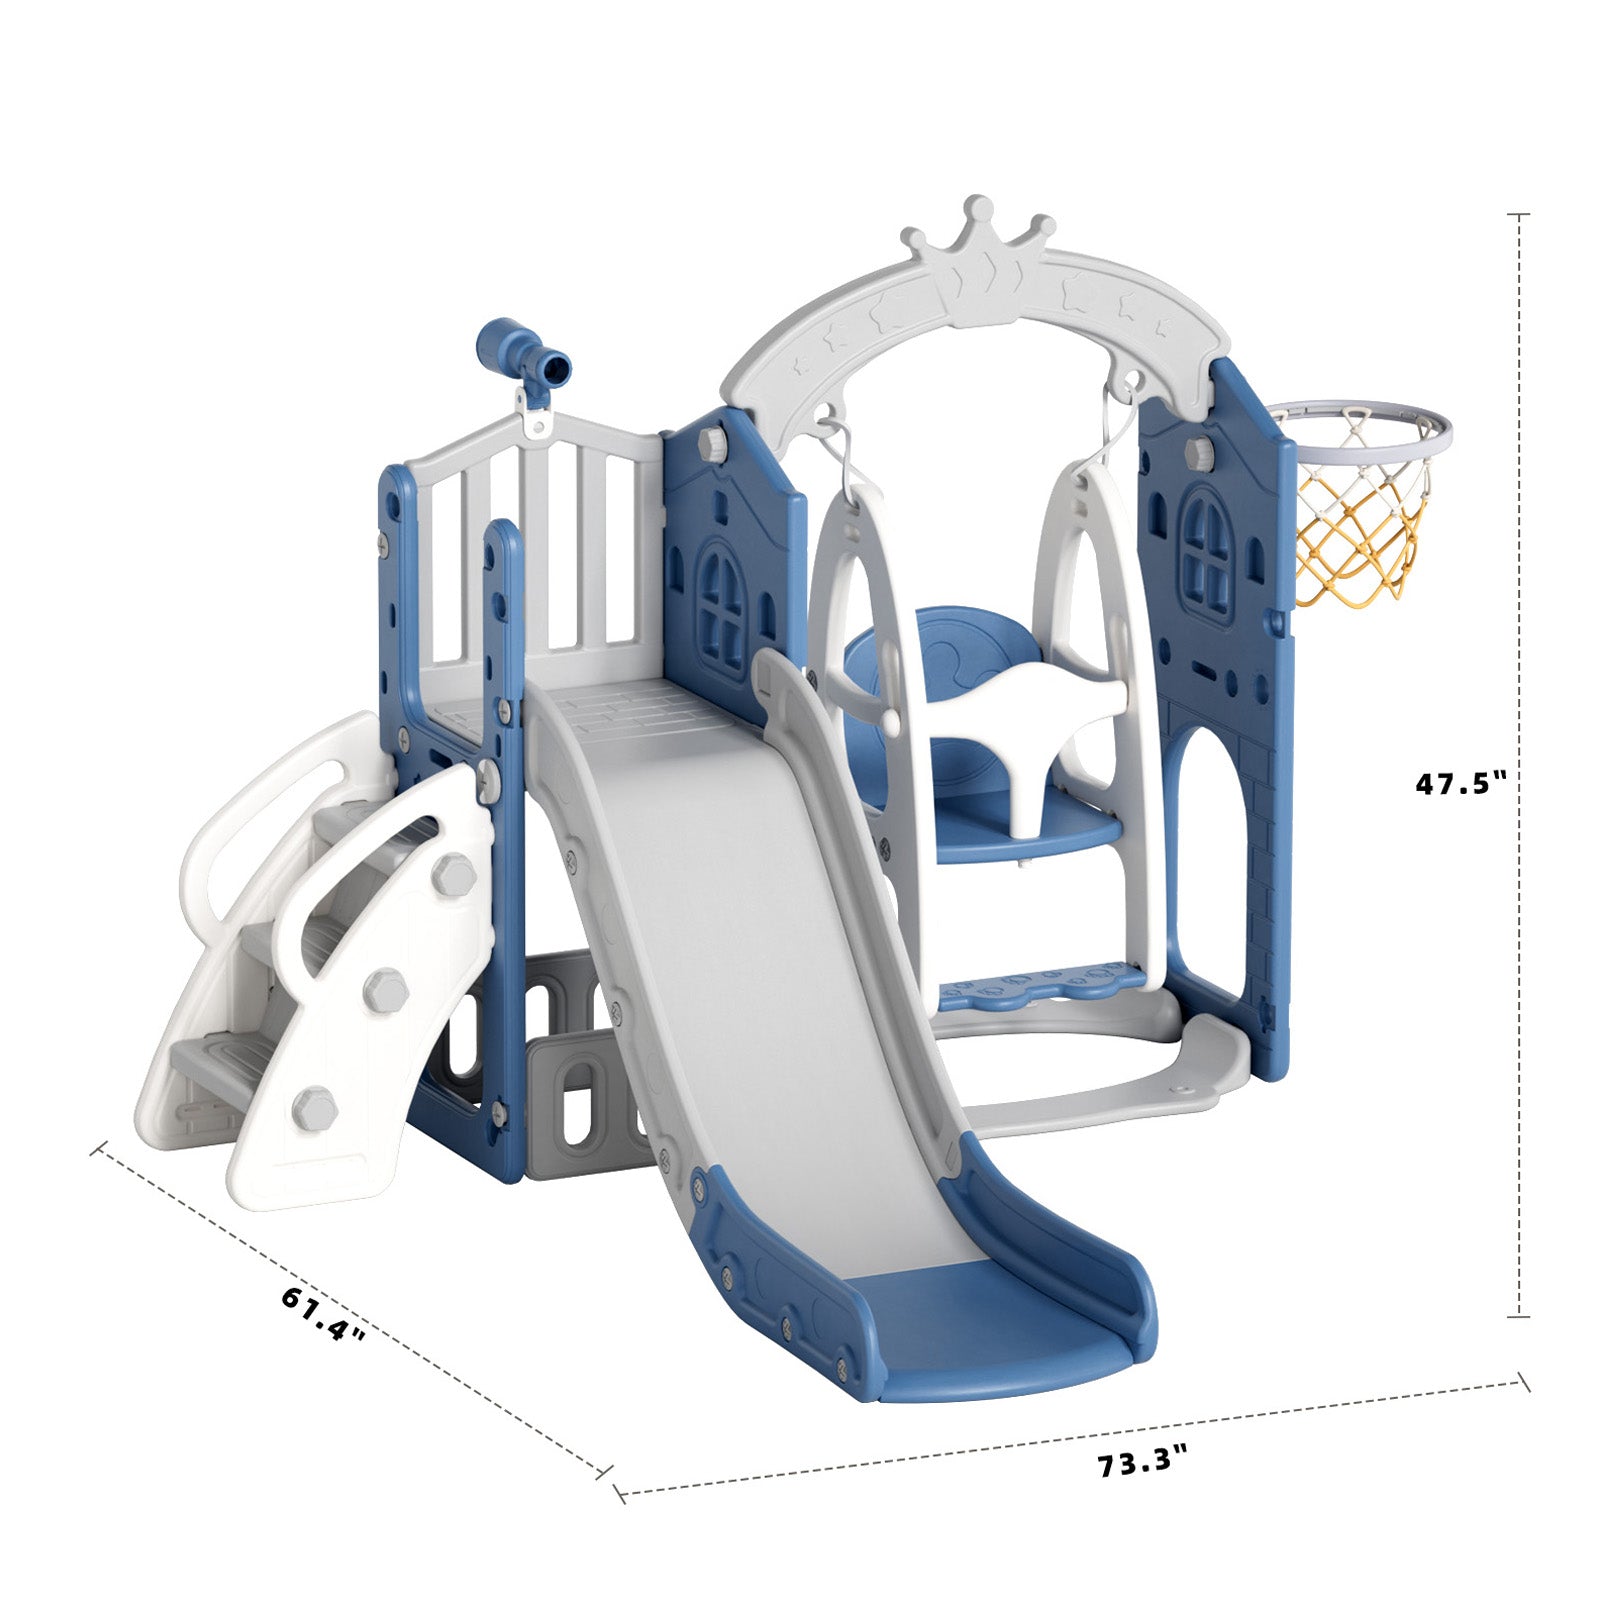 XJD 6 in 1 Toddler Slide Set Indoor Outdoor Plastic Freestanding Slide, Blue&Gray